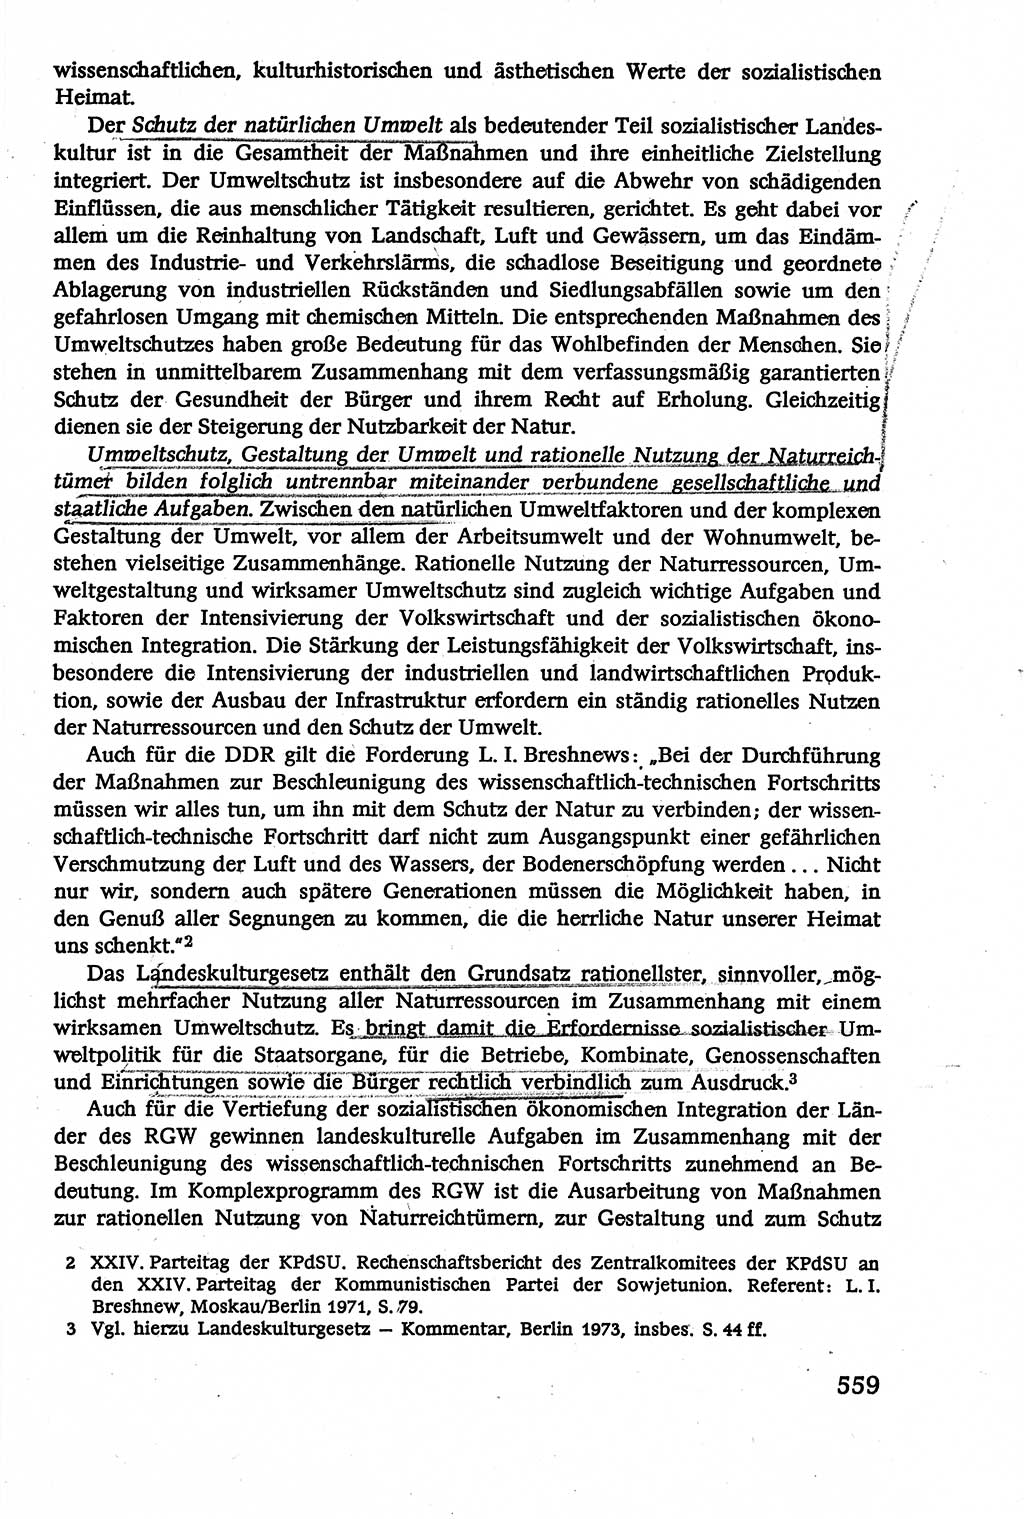 Verwaltungsrecht [Deutsche Demokratische Republik (DDR)], Lehrbuch 1979, Seite 559 (Verw.-R. DDR Lb. 1979, S. 559)